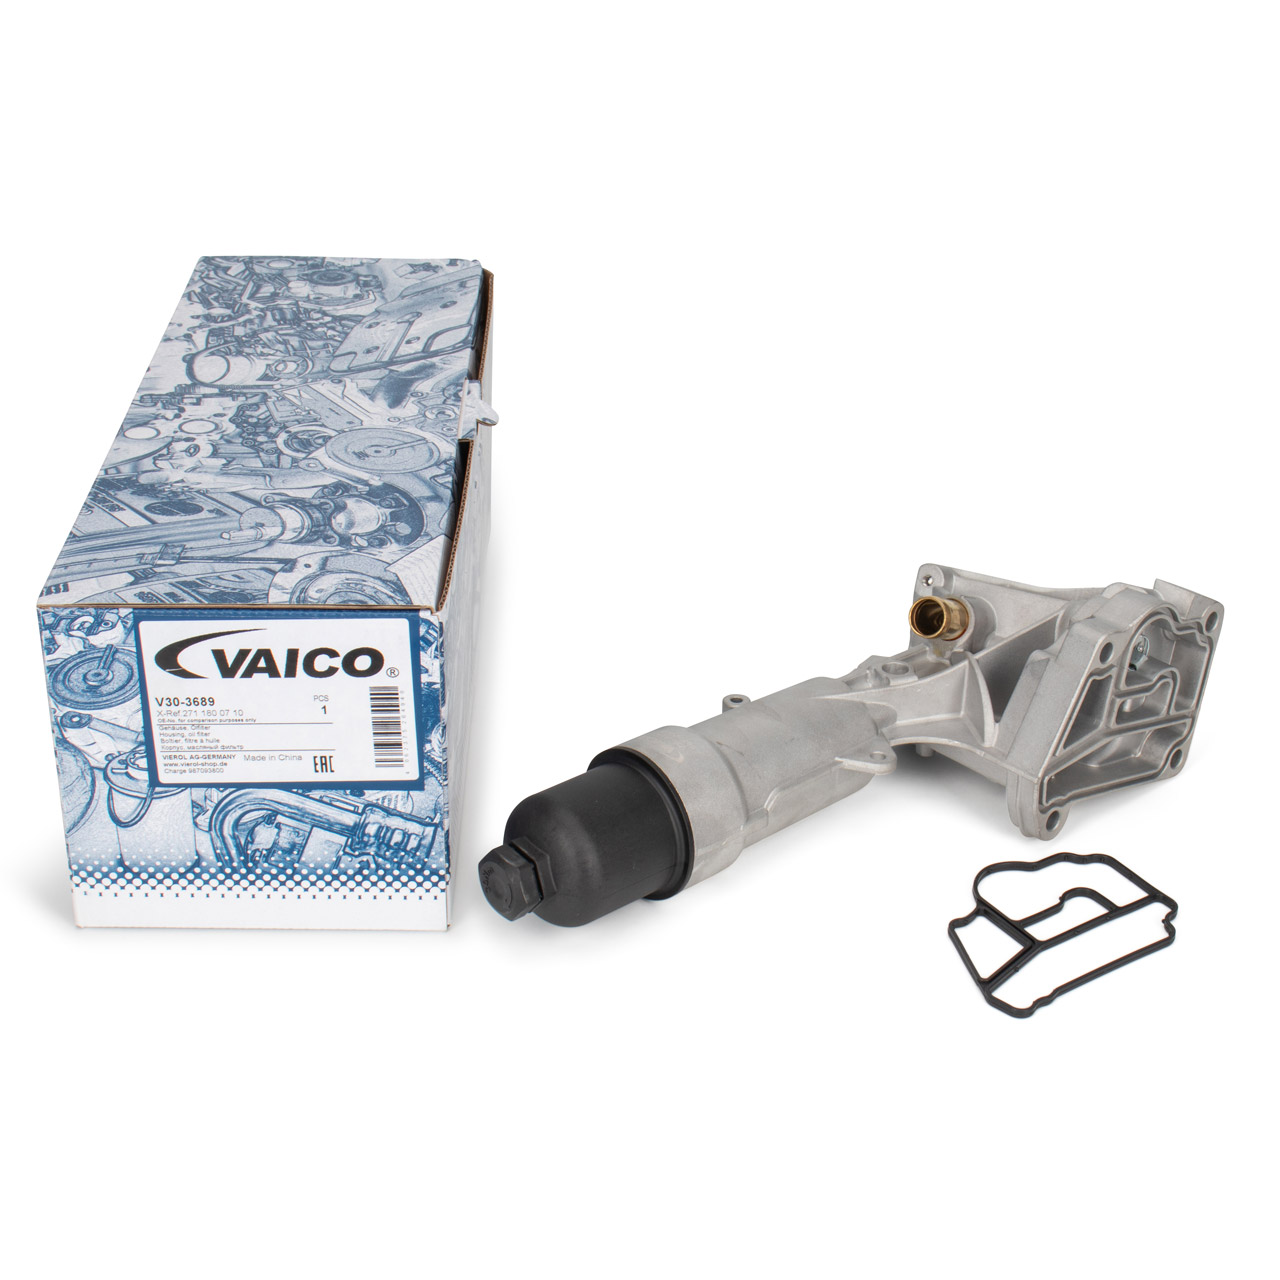 VAICO V30-3689 Ölfiltergehäuse + Dichtung MERCEDES W203 W204 W211 W212 SLK R171 M271